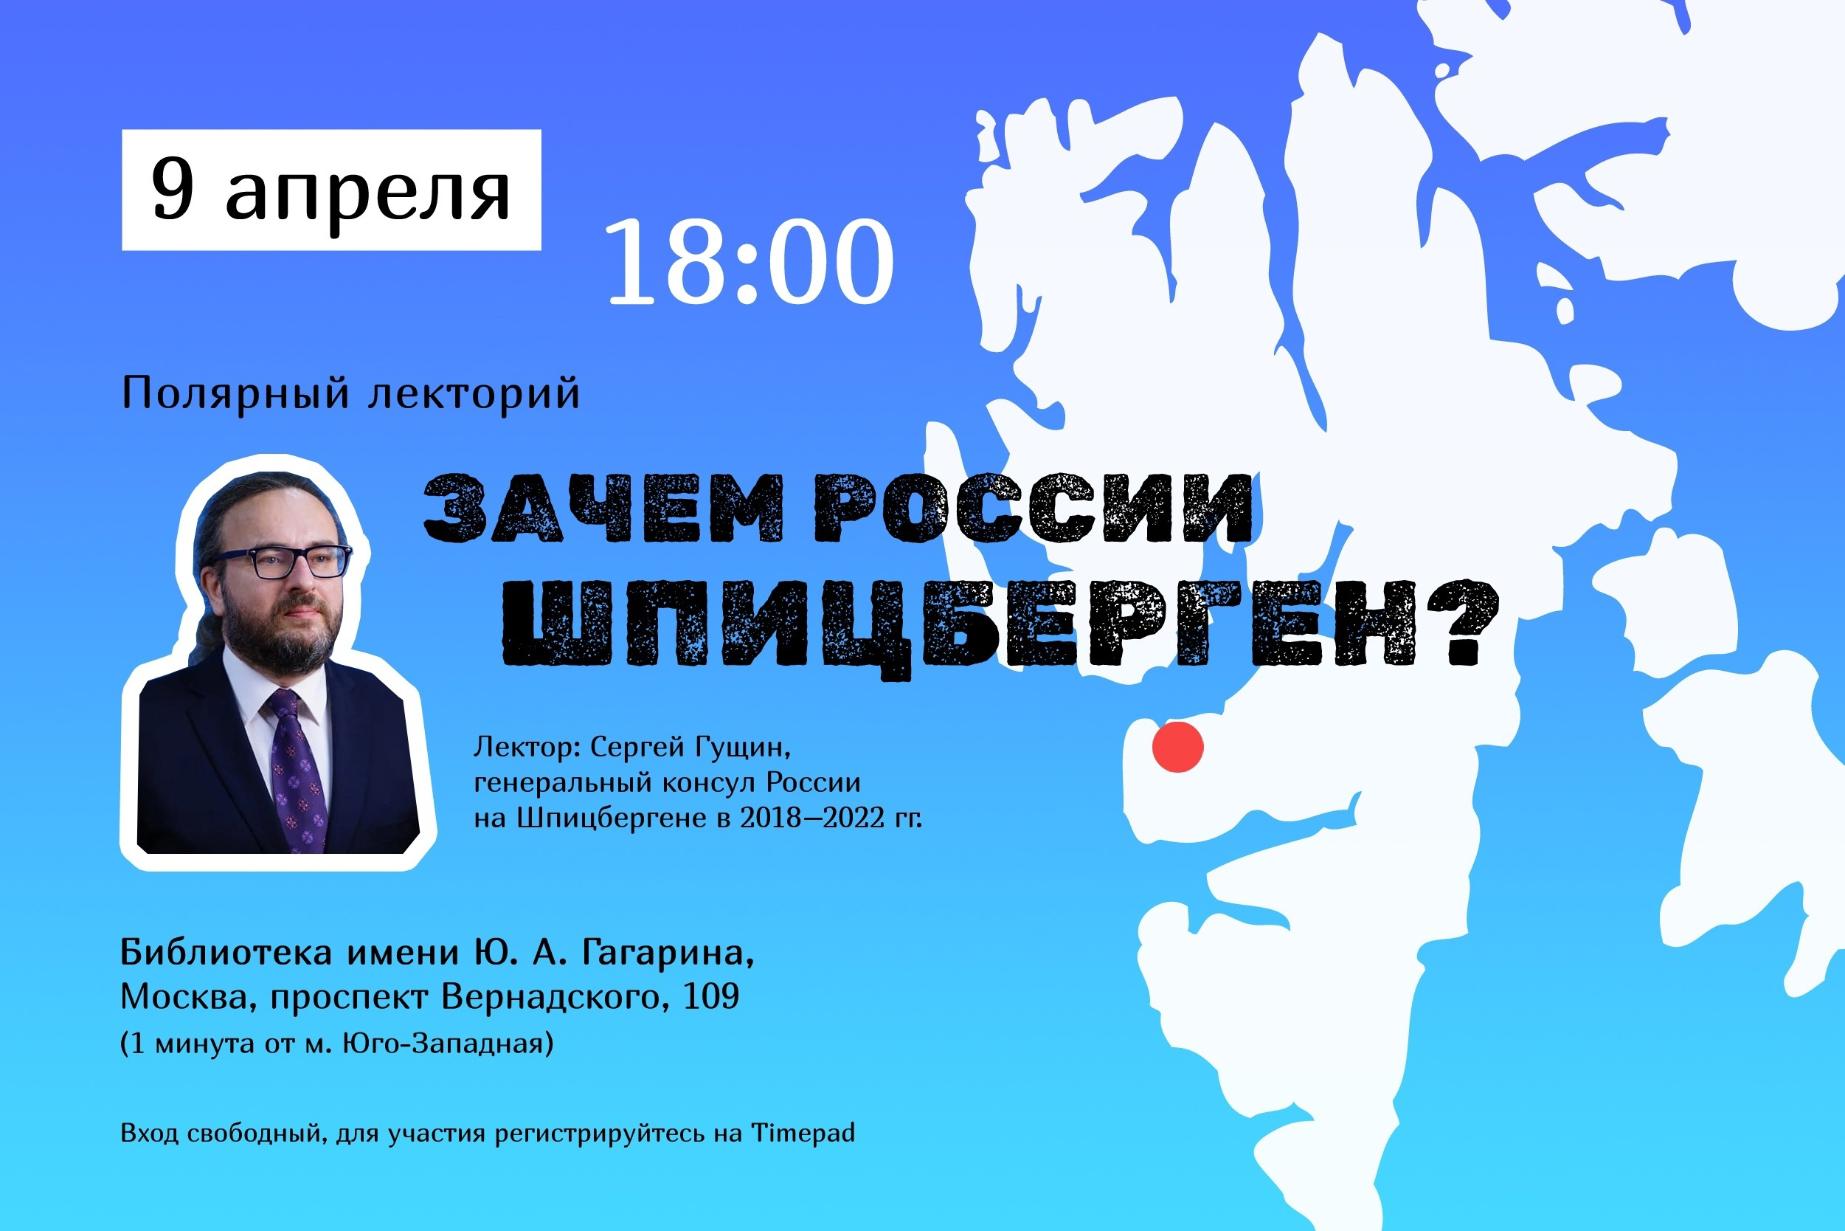 9 апреля в Москве состоится лекция «Цели и проблемы российского присутствия на Шпицбергене»